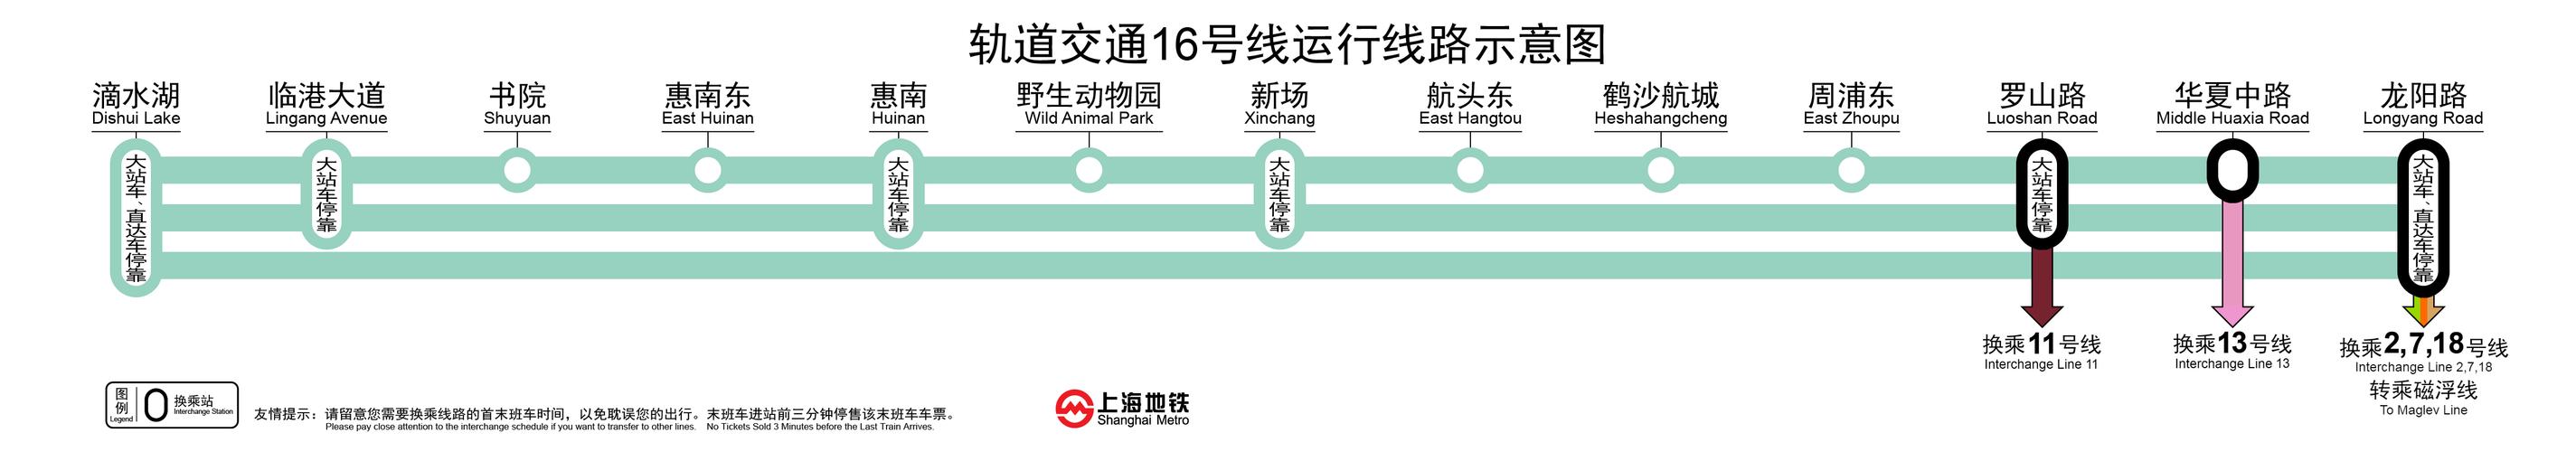 请问 上海1号线和3号线的北延伸段还有没有可能继续往北延展啊